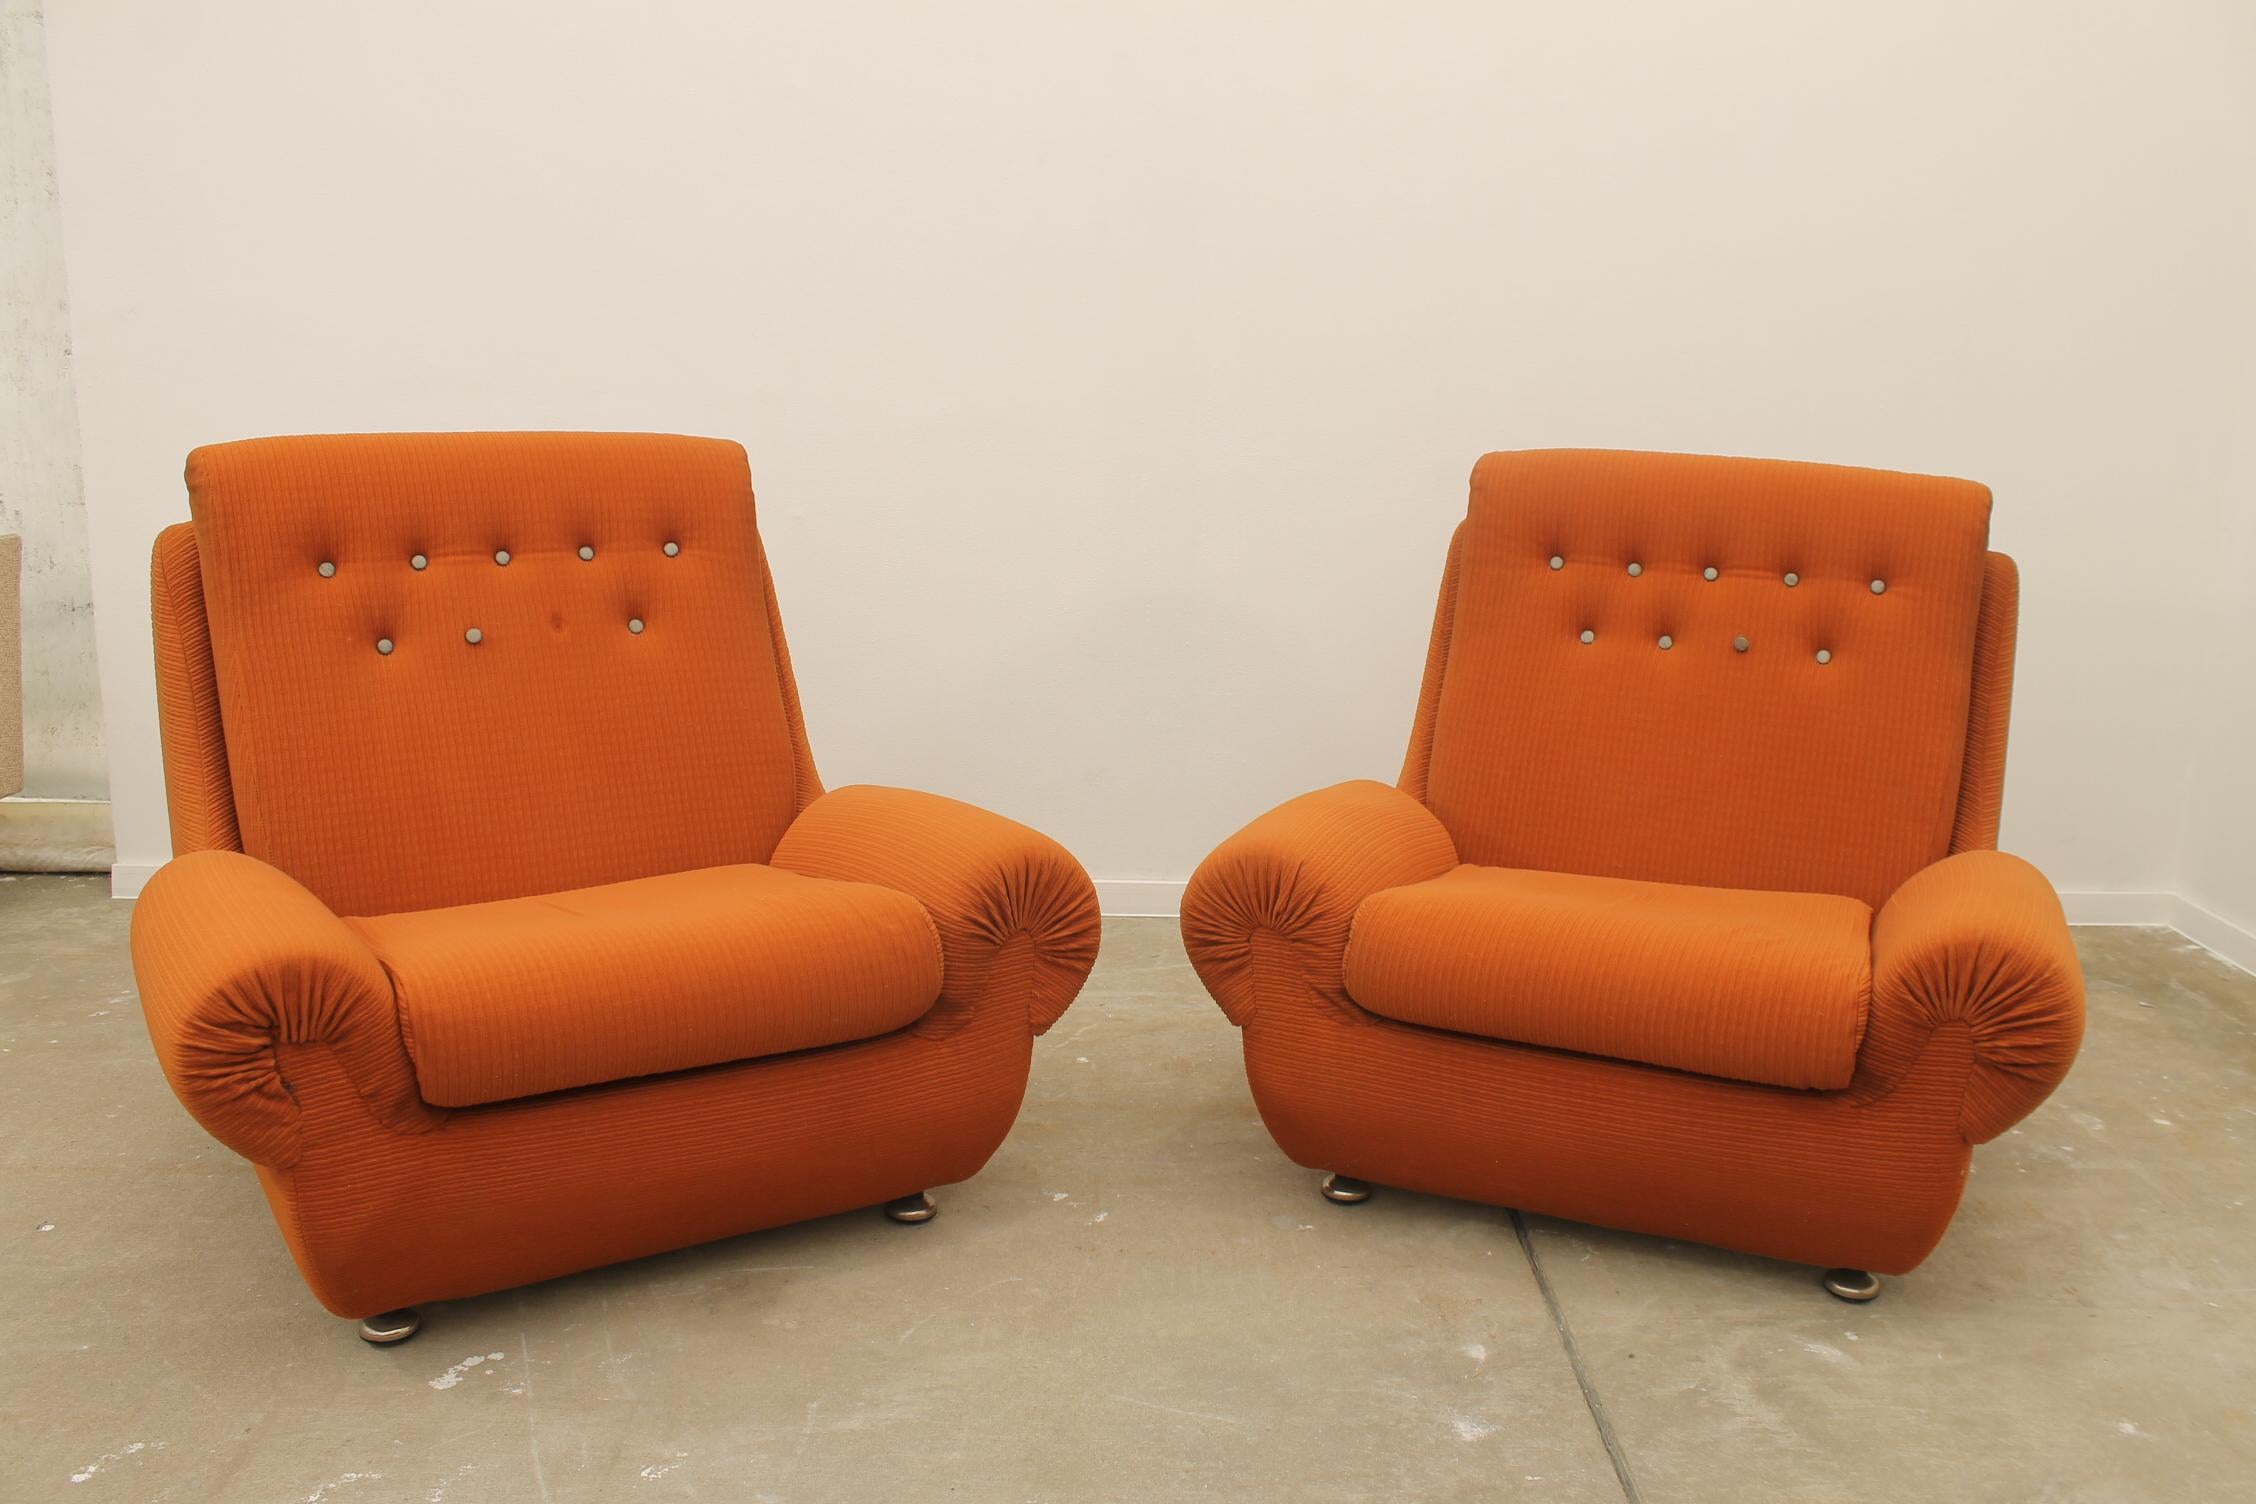 Ces fauteuils faisaient partie d'un ensemble de salon fabriqué par la société Jitona dans les années 1970.
Ils représentent un exemple typique du design de meubles des années 1970/1980 du XXe siècle dans l'ancienne Tchécoslovaquie. 
Le mobilier